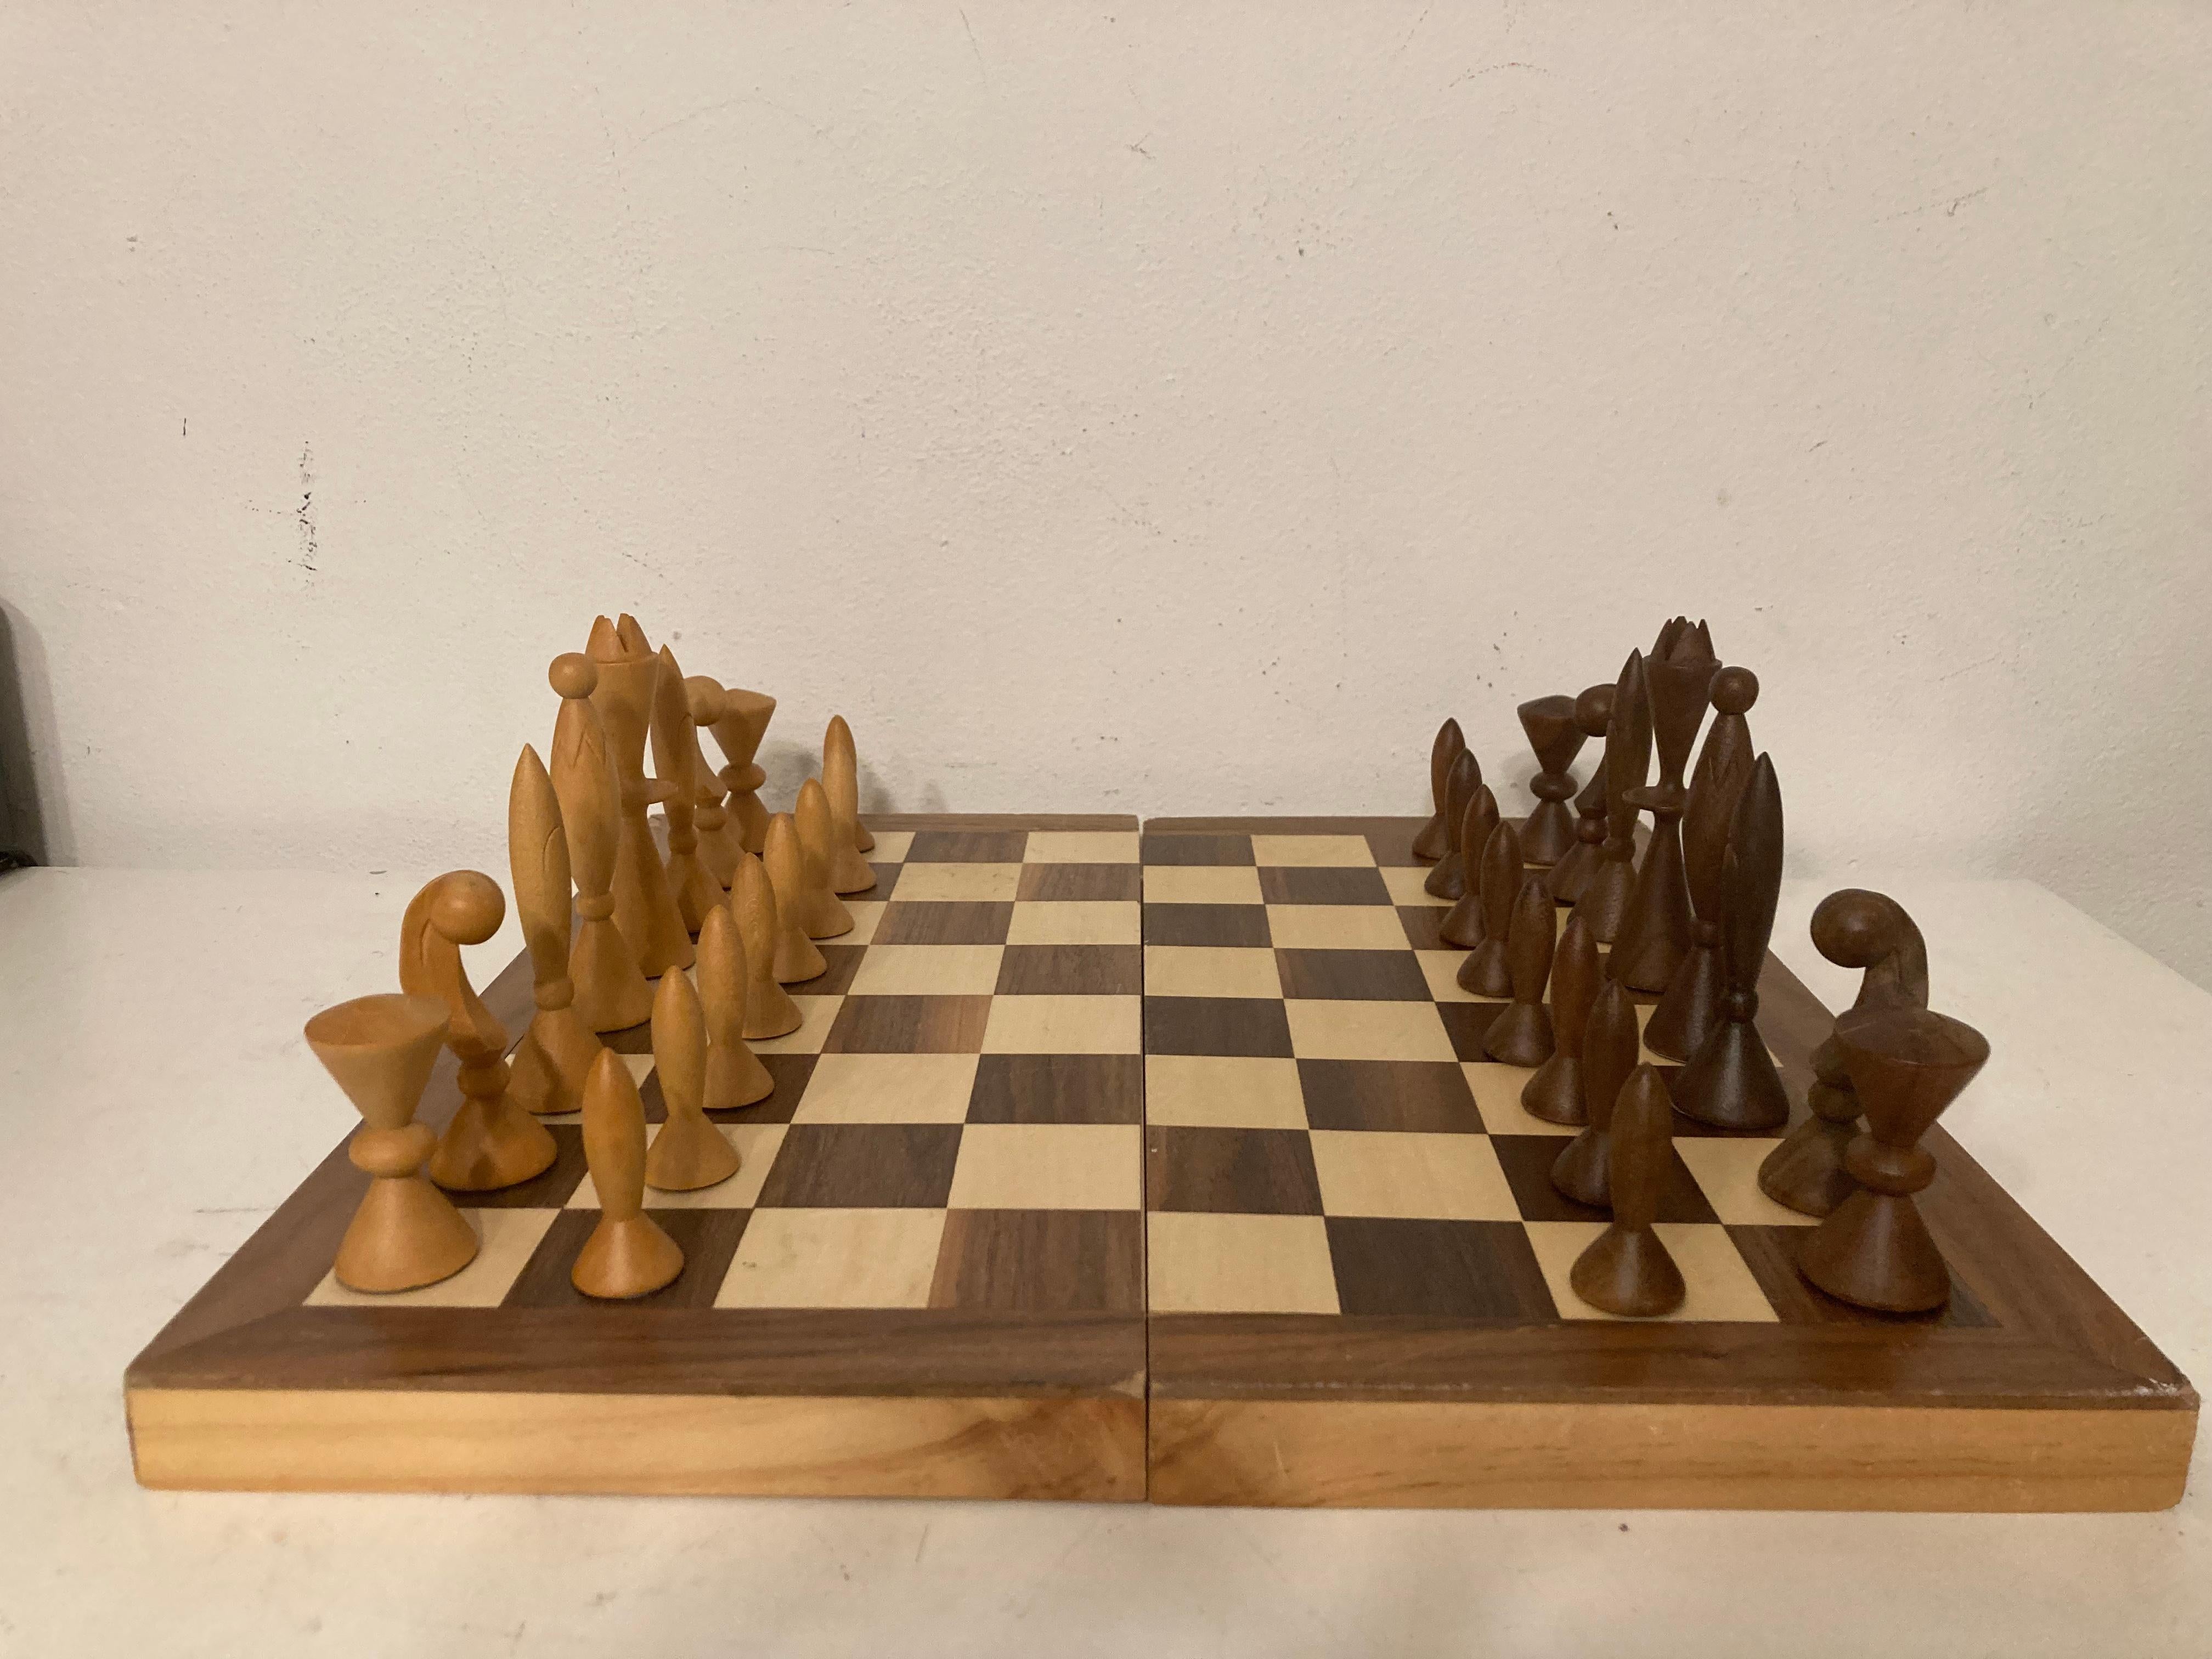 anri chess set